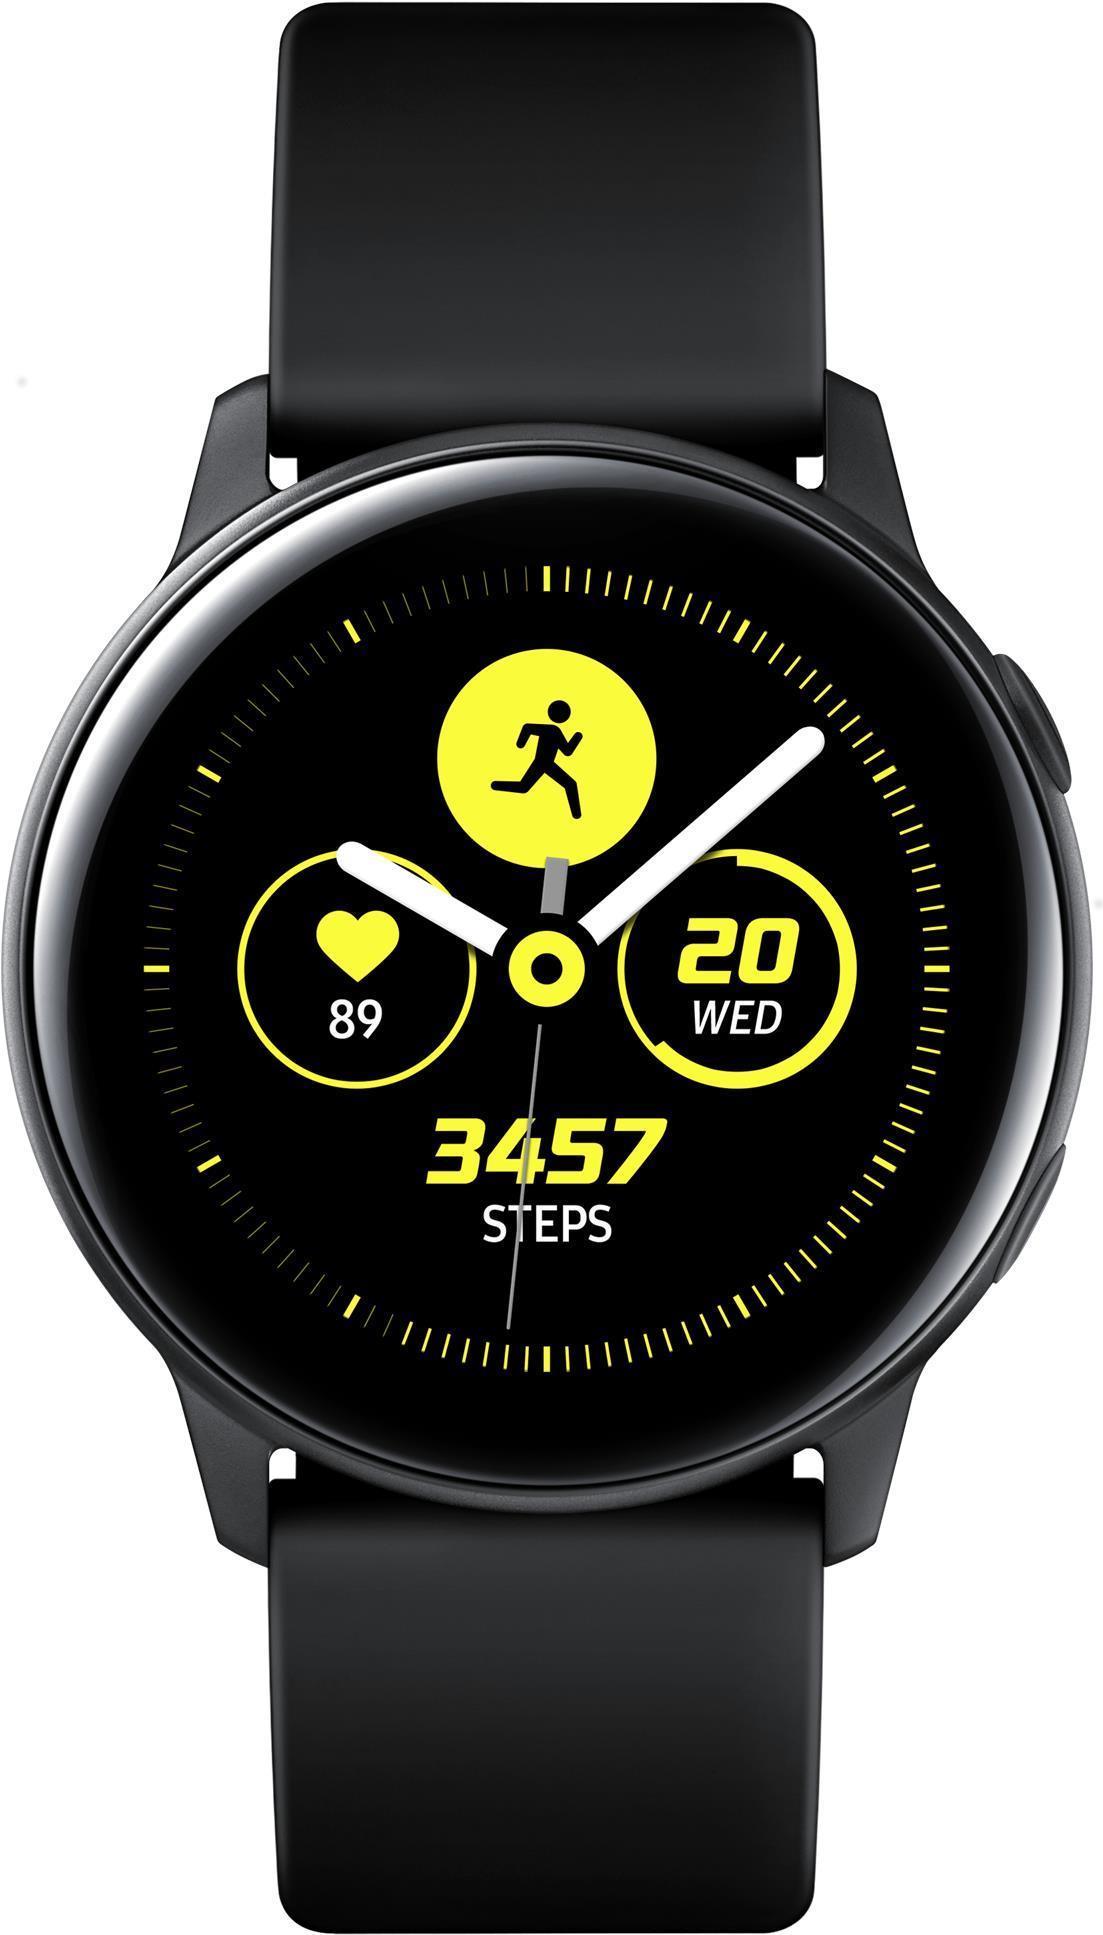 Samsung Galaxy Watch Active - Schwarz - intelligente Uhr mit Band - Flouroelastomer - Anzeige 2.81 cm (1.1